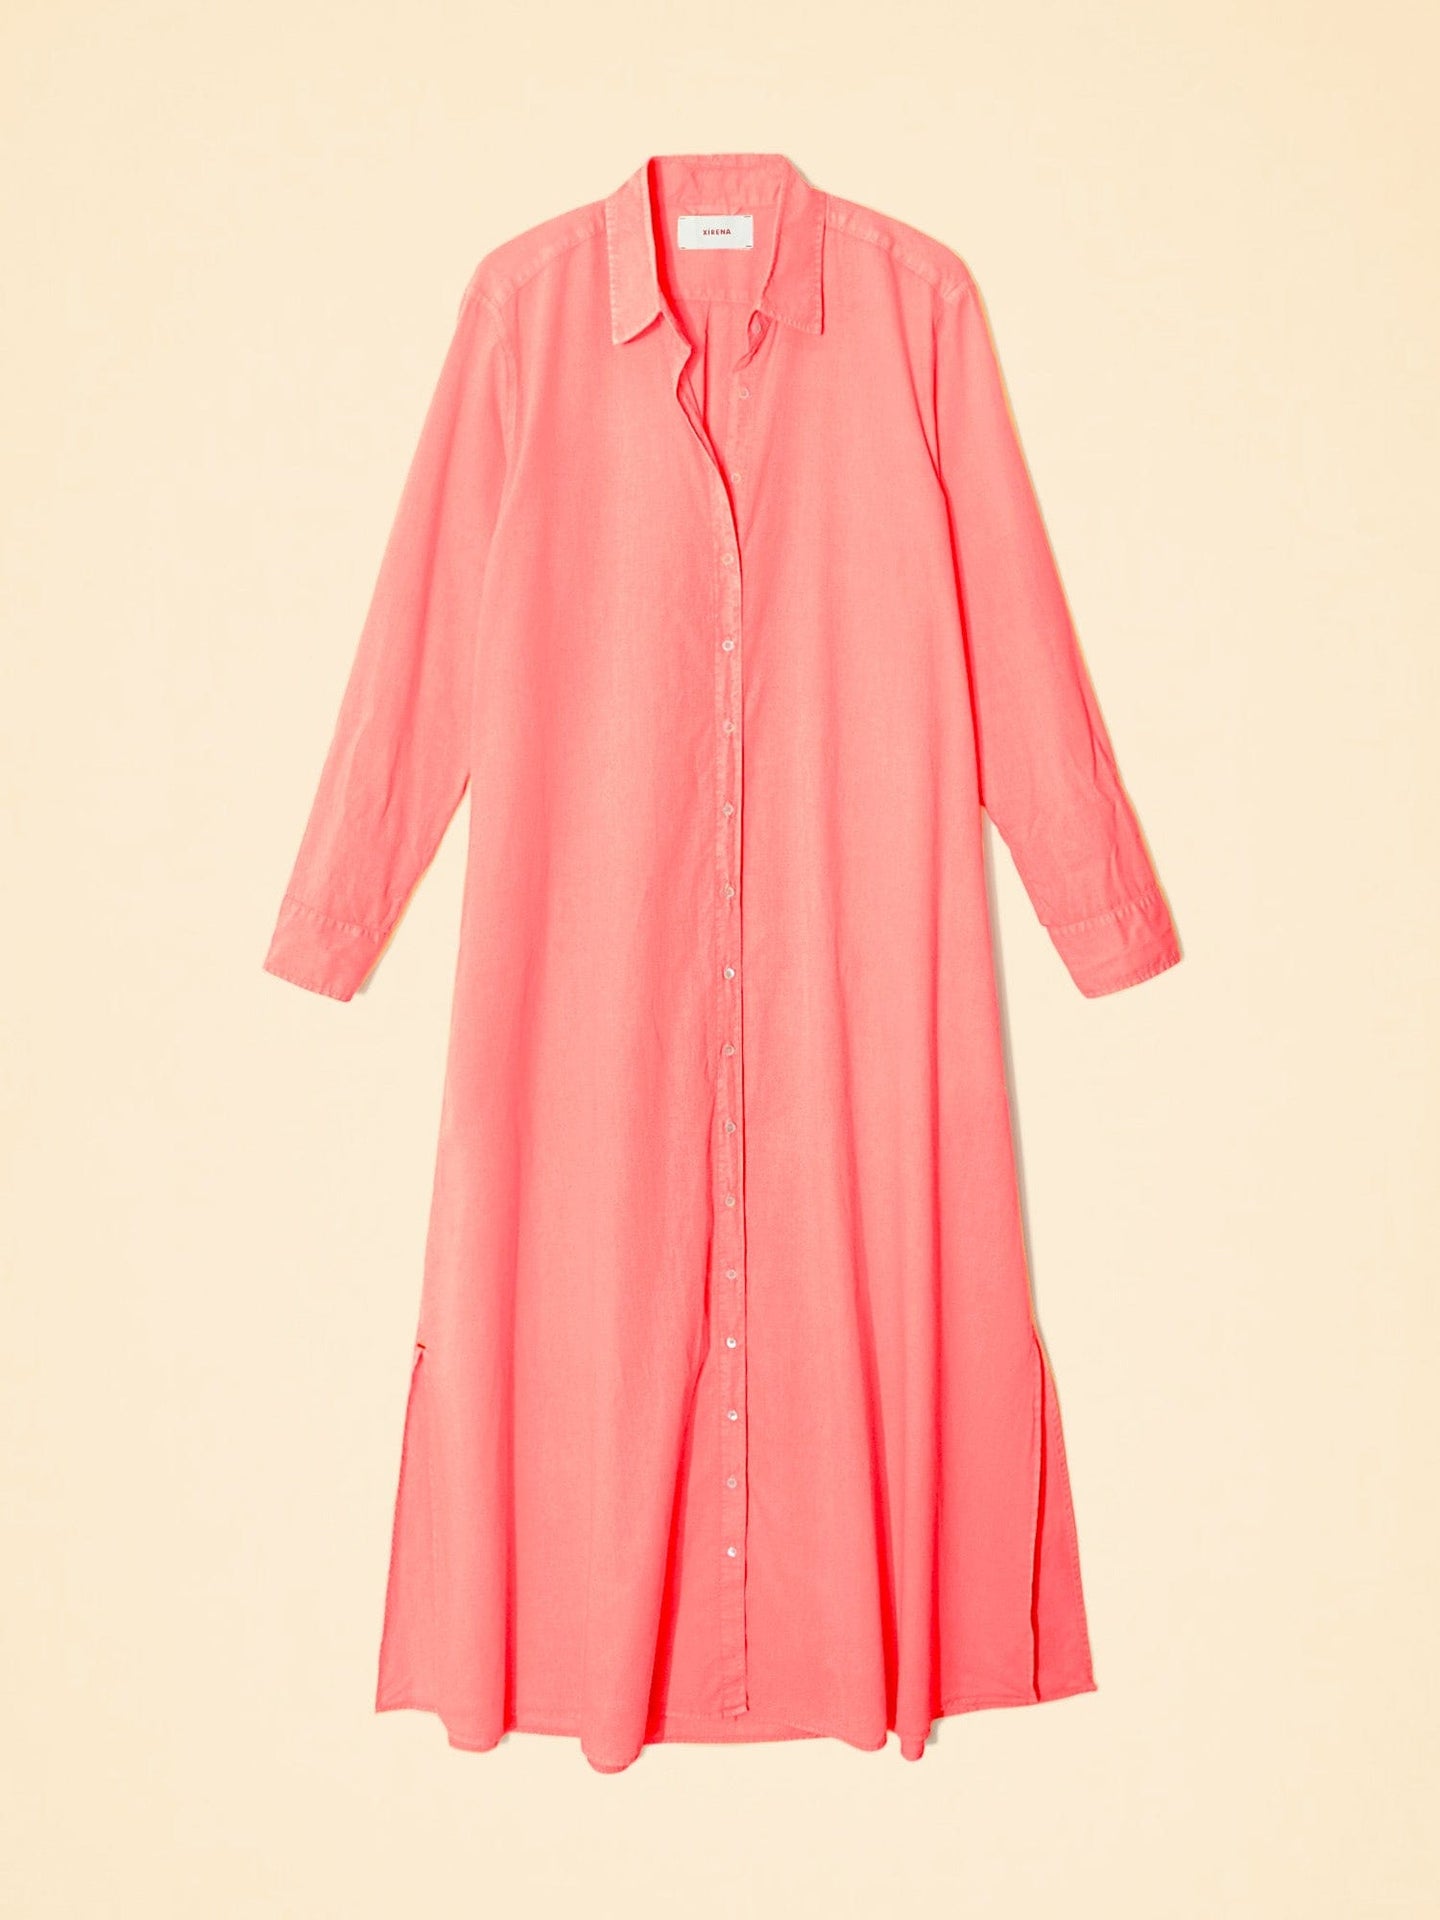 Xirena Dress Neon Pink Boden Dress